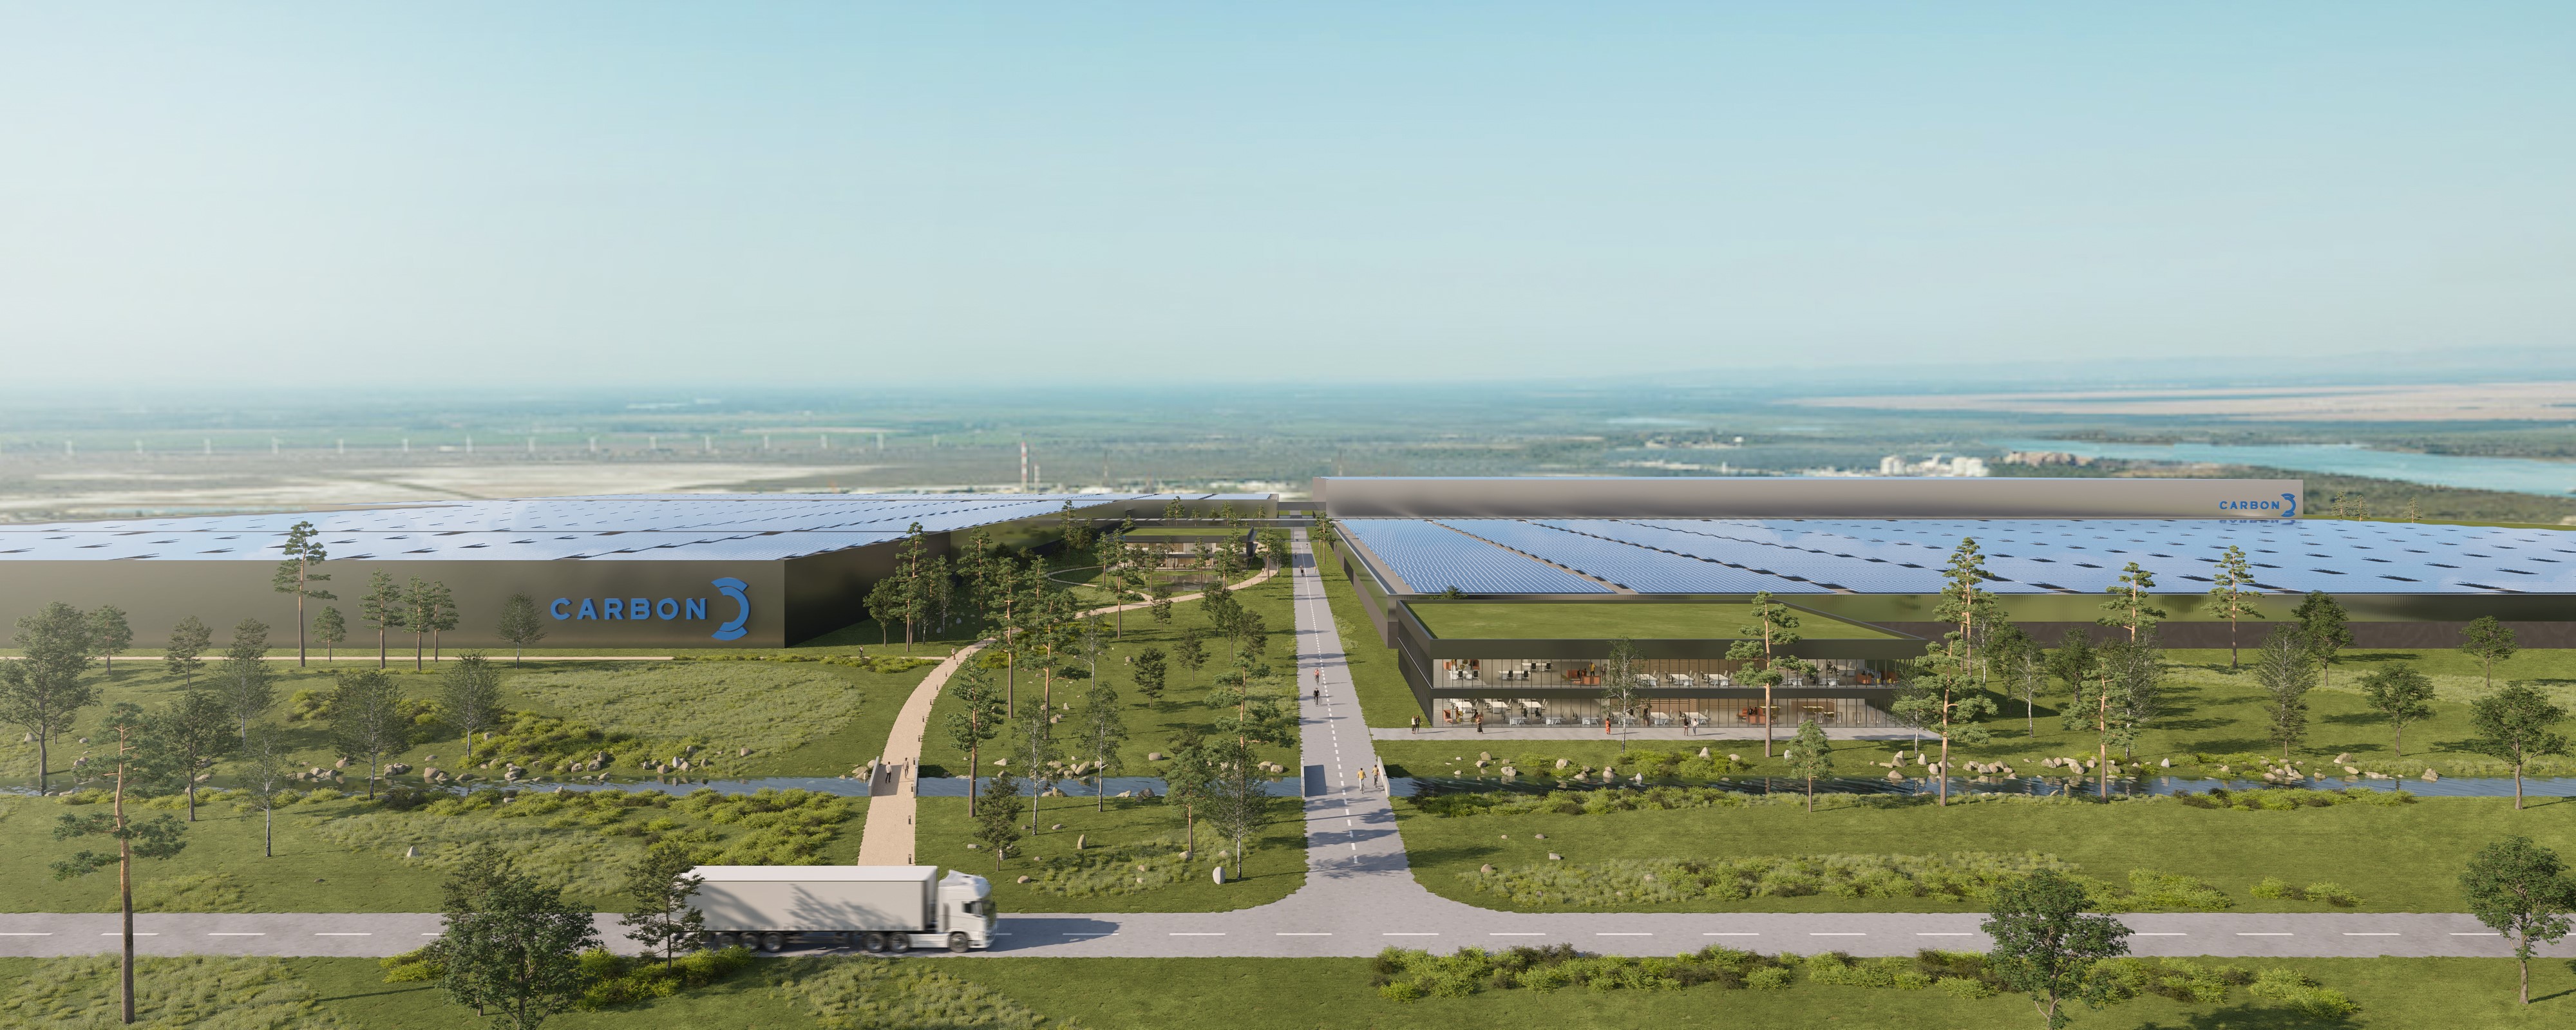 Une toute première giga-factory photovoltaïque en France, à Fos-sur-Mer